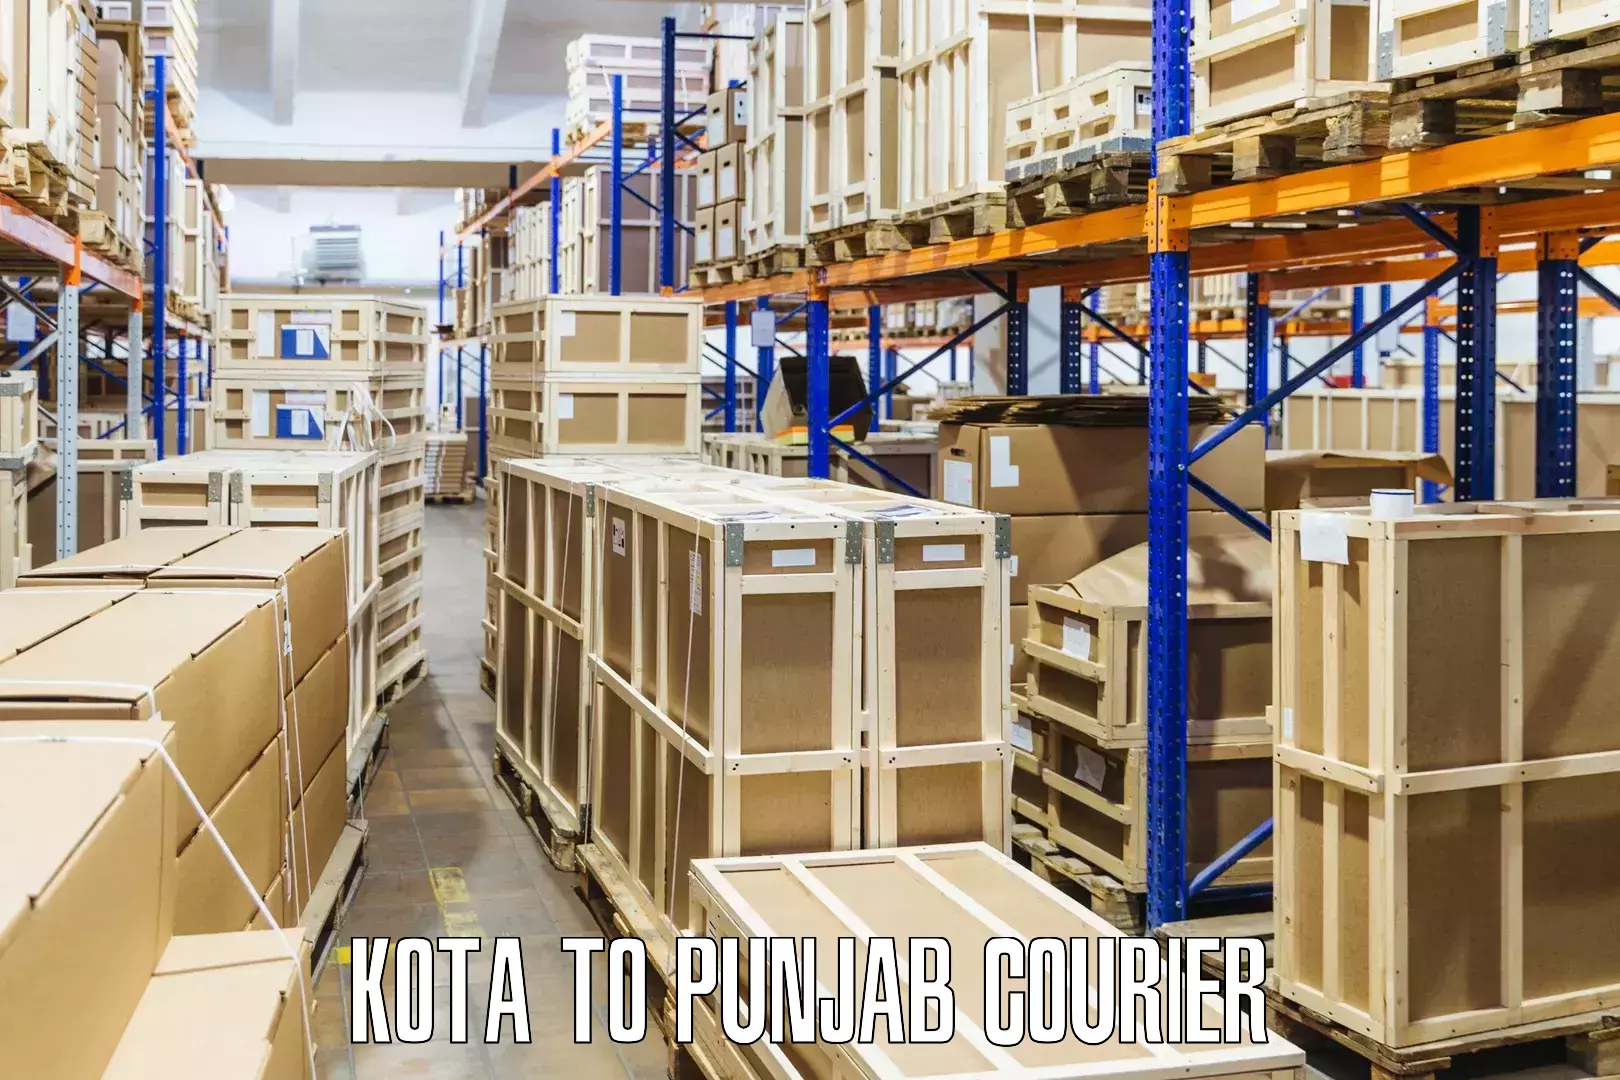 Flexible courier rates Kota to Rupnagar